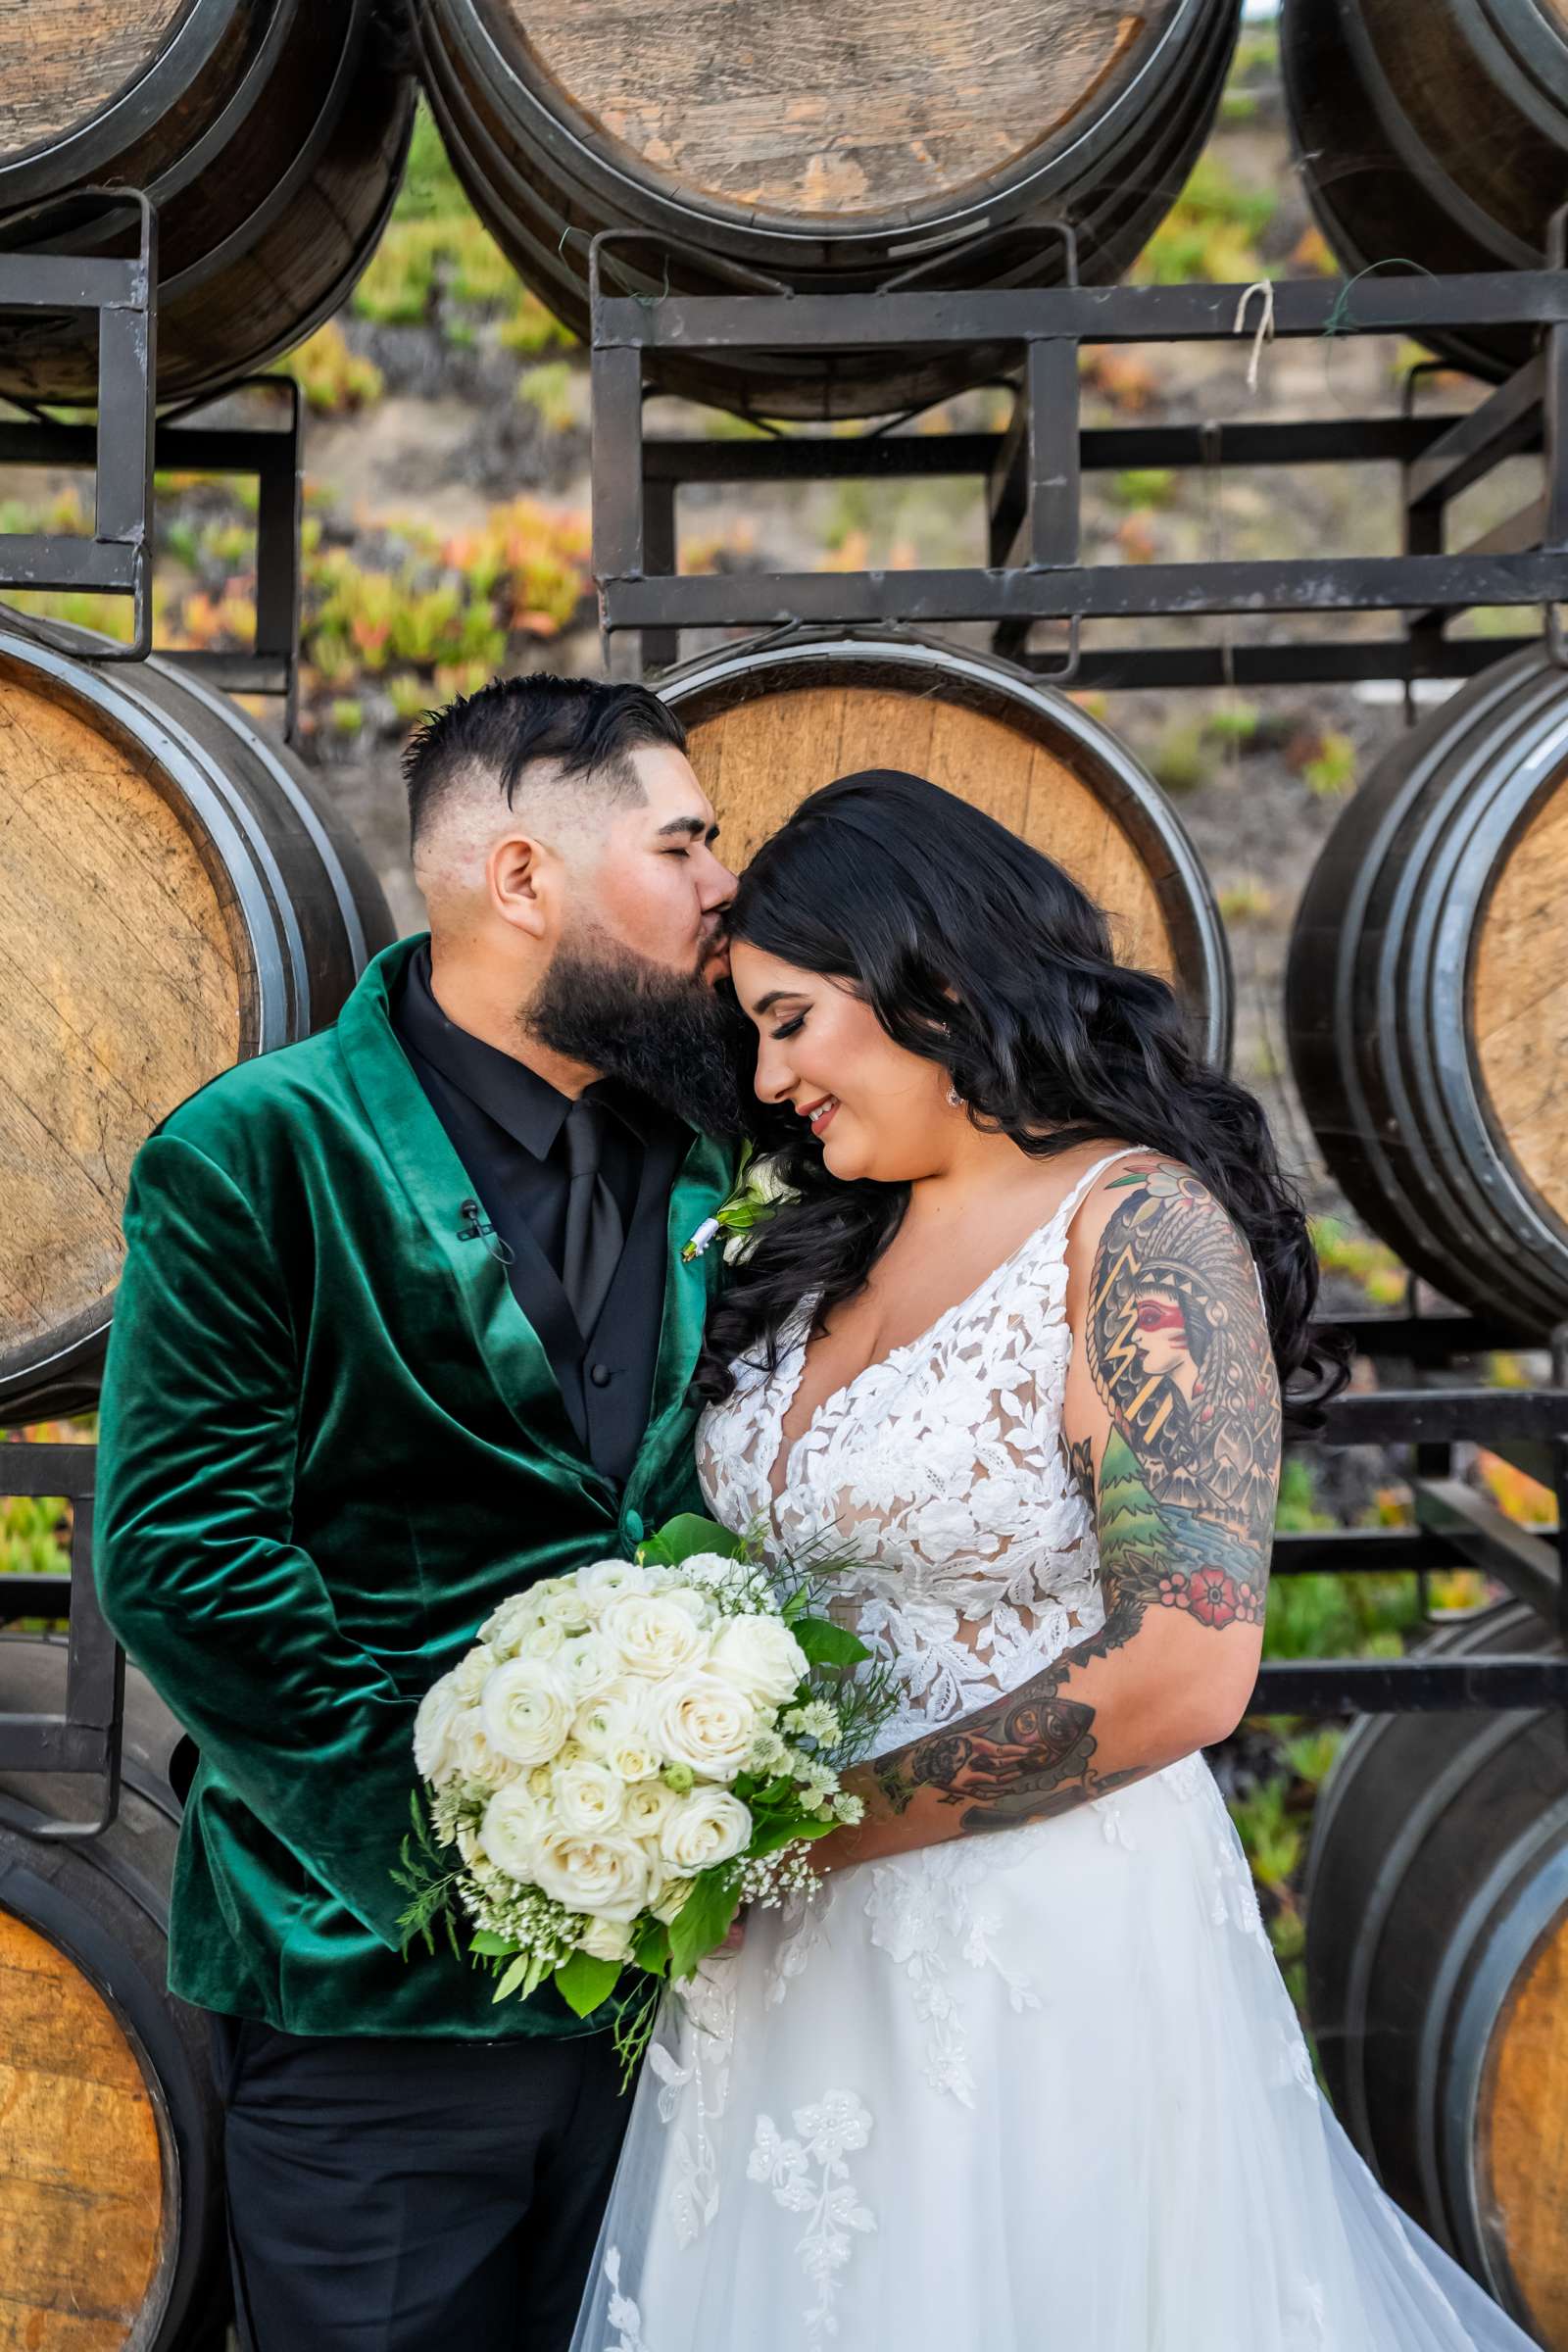 La Hacienda Wedding, Ashley and Alvaro Wedding Photo #7 by True Photography